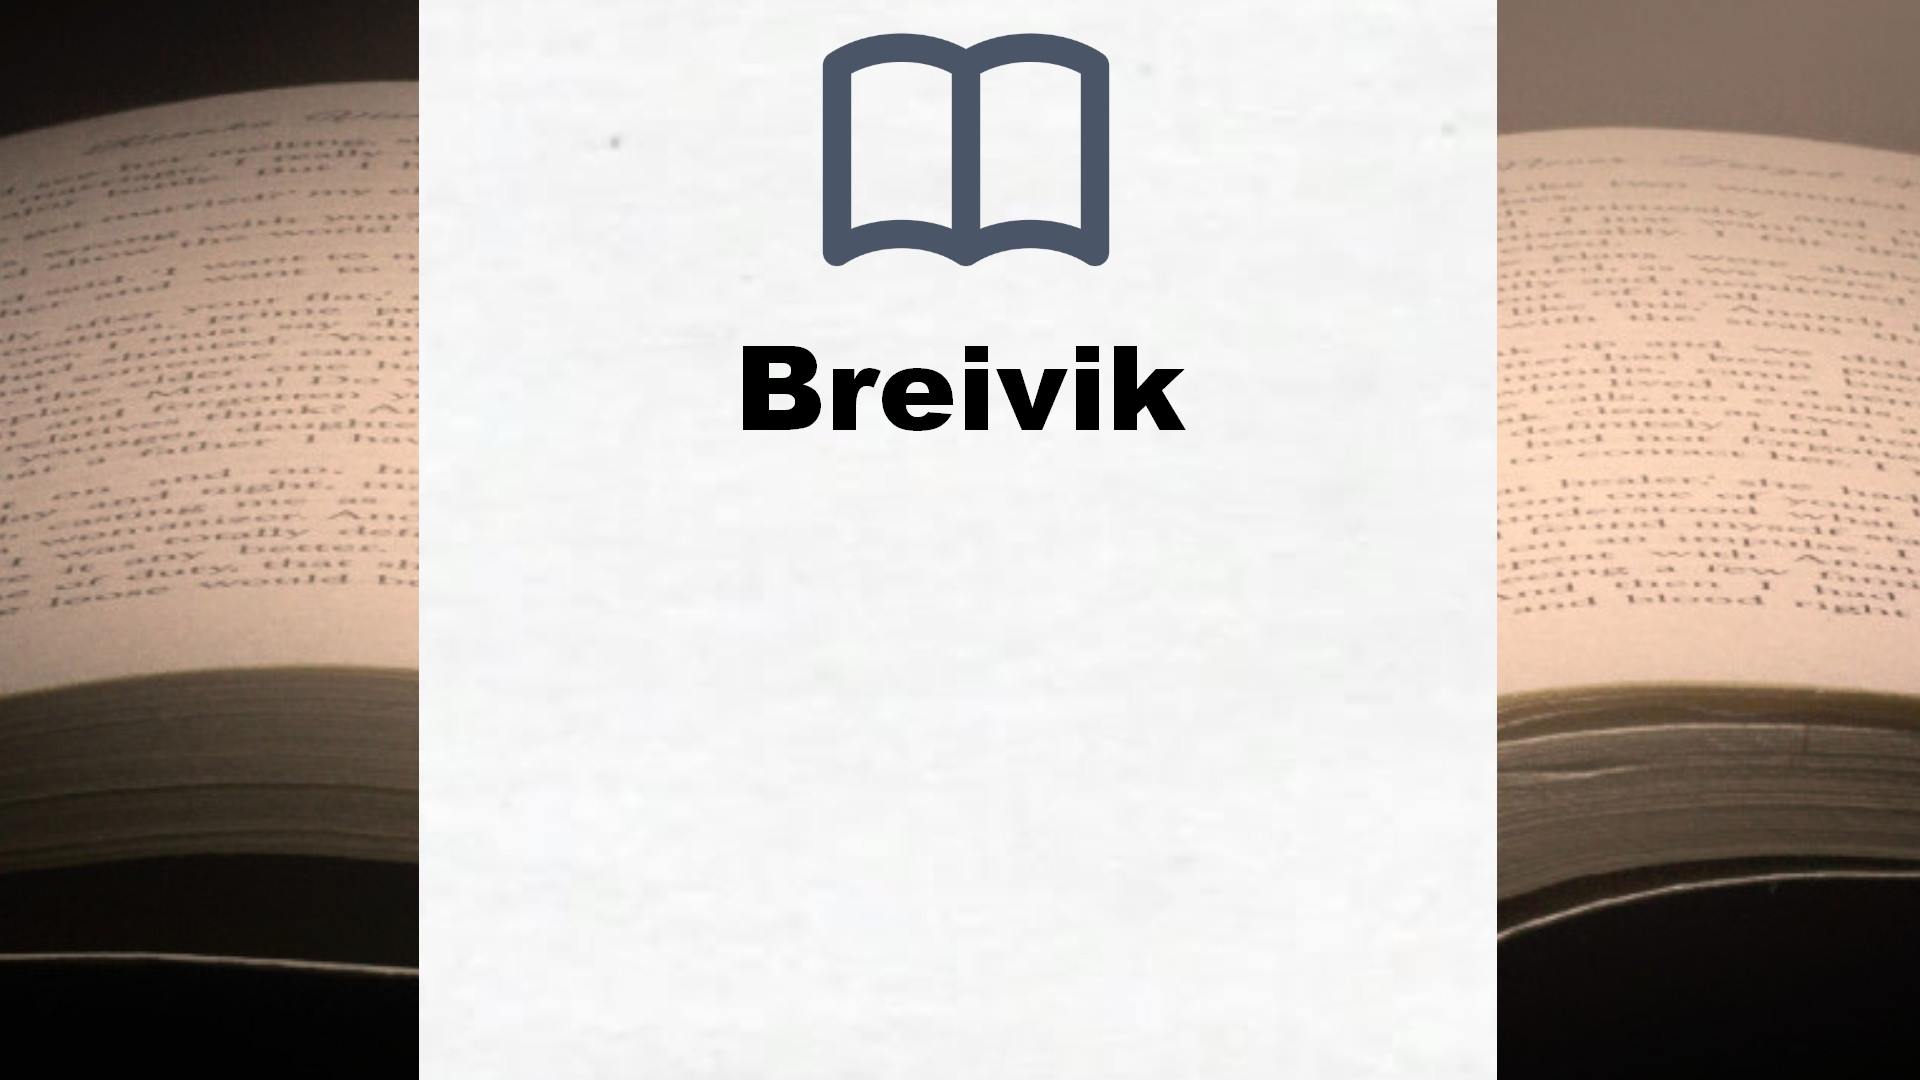 Bücher über Breivik